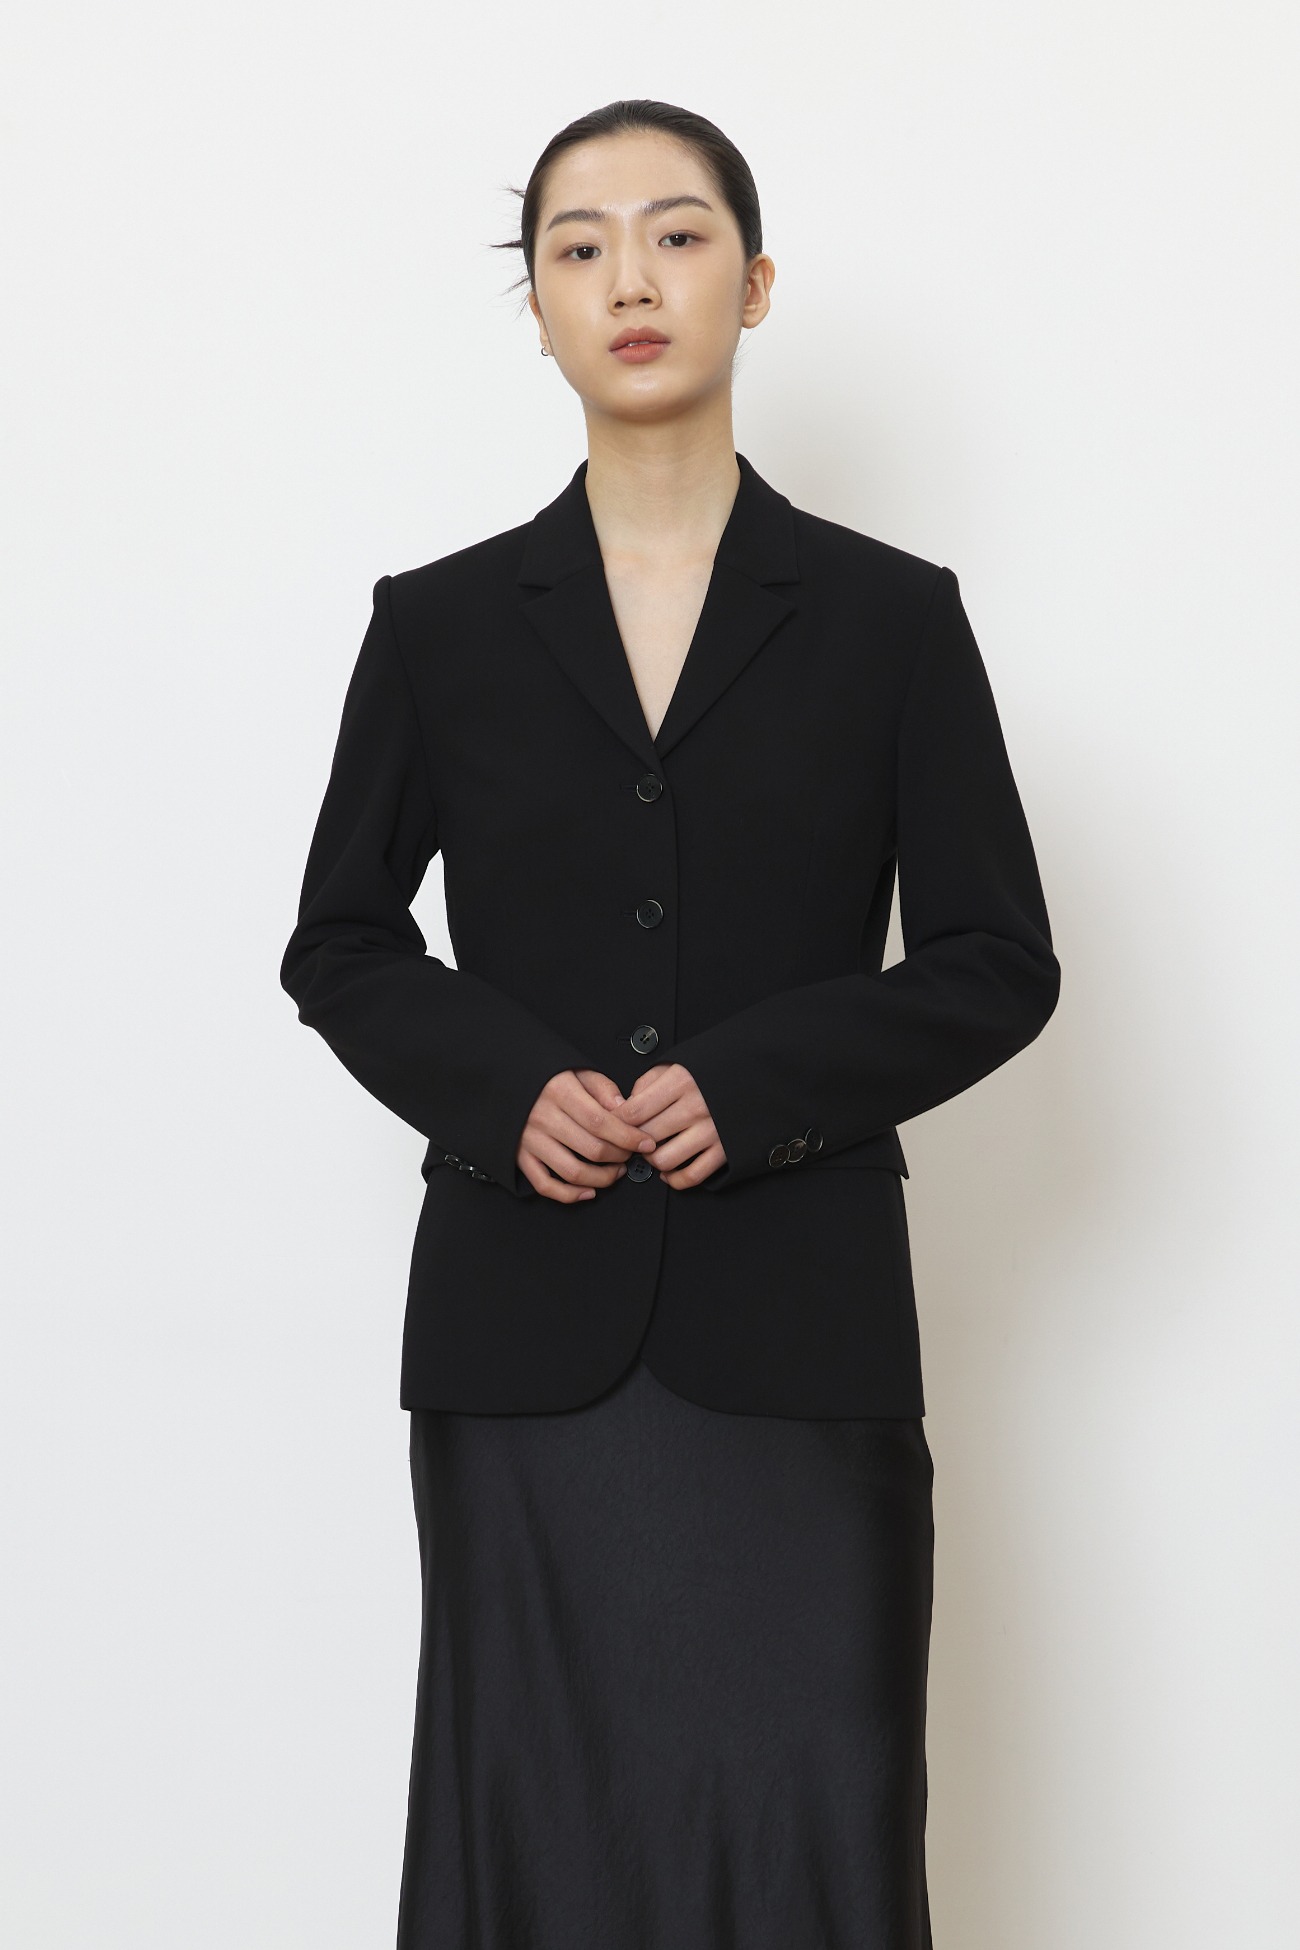 Feminine tailored jacket